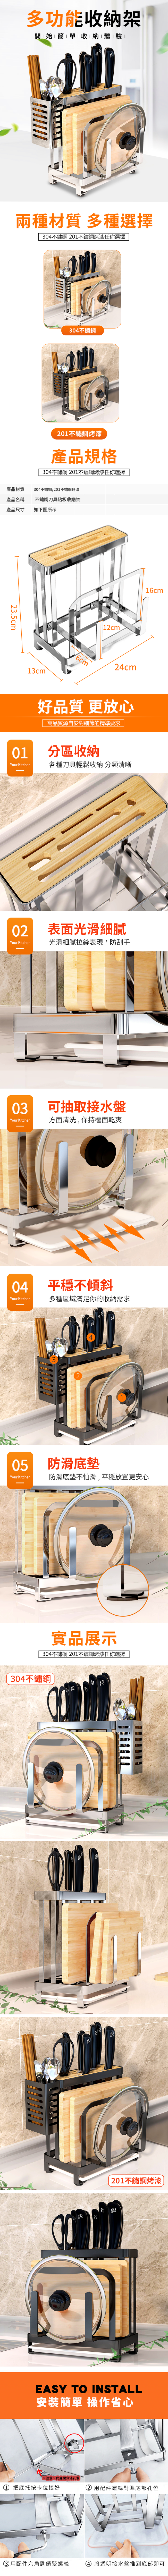 不鏽鋼刀具砧板收納架 分區收納 接水盤 廚房必備 (黑色/不鏽鋼色)